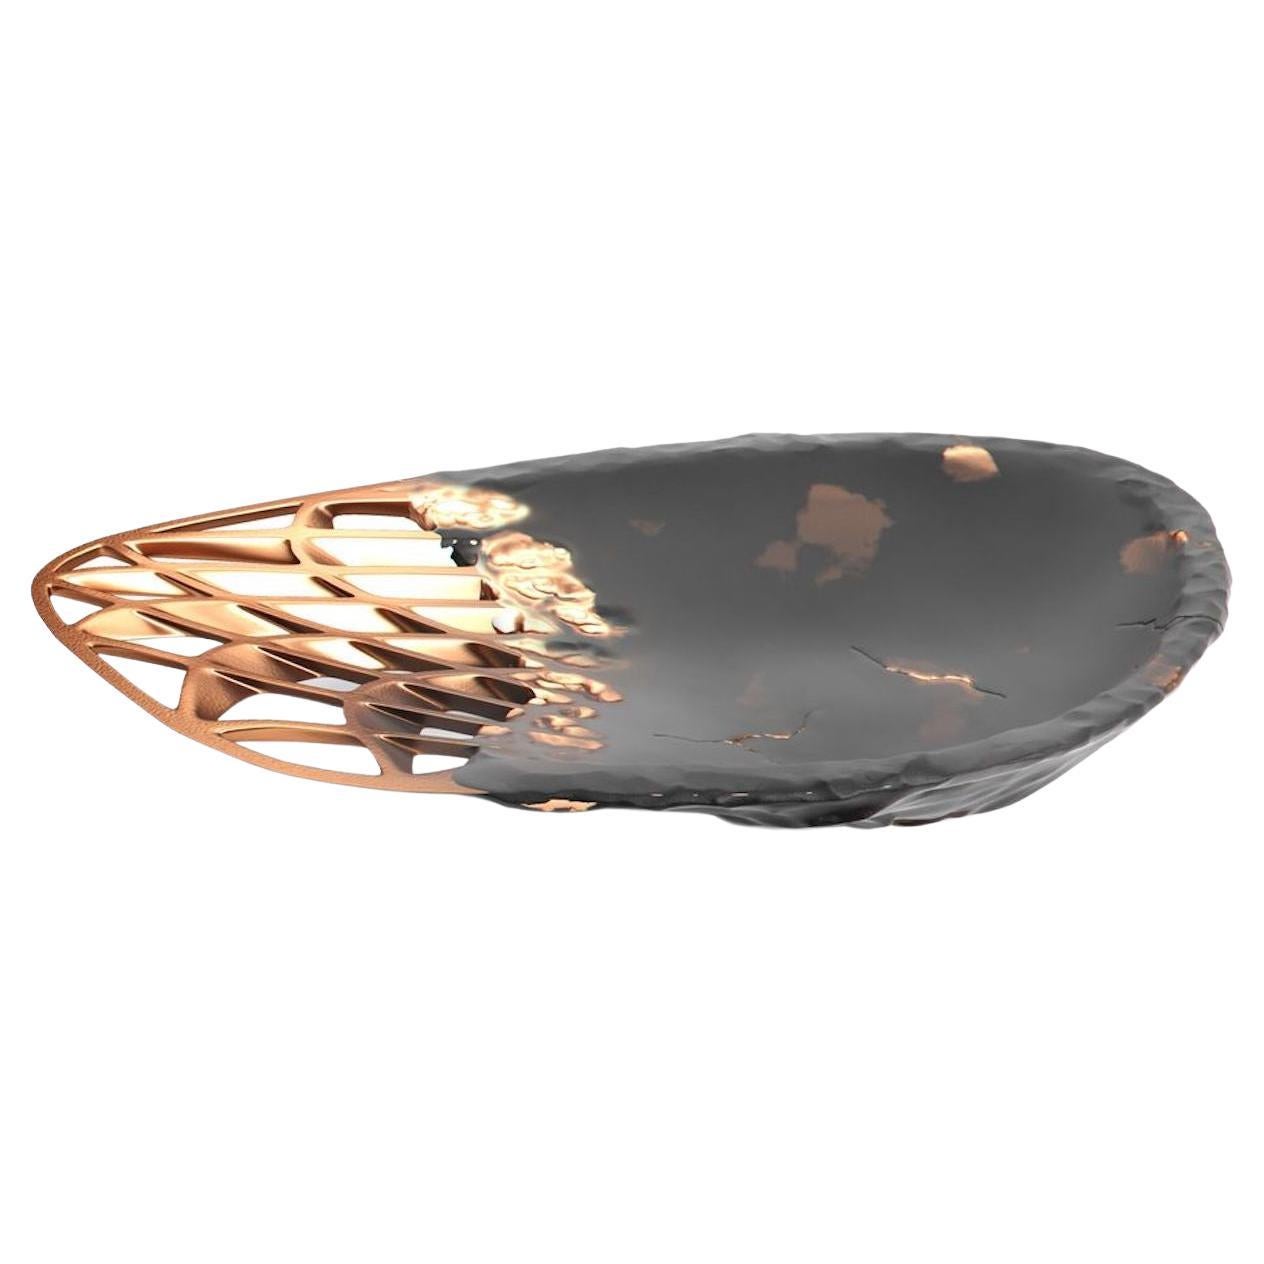 Metsidian Tray in Obsidian with Copper by Janne Kyttanen For Sale